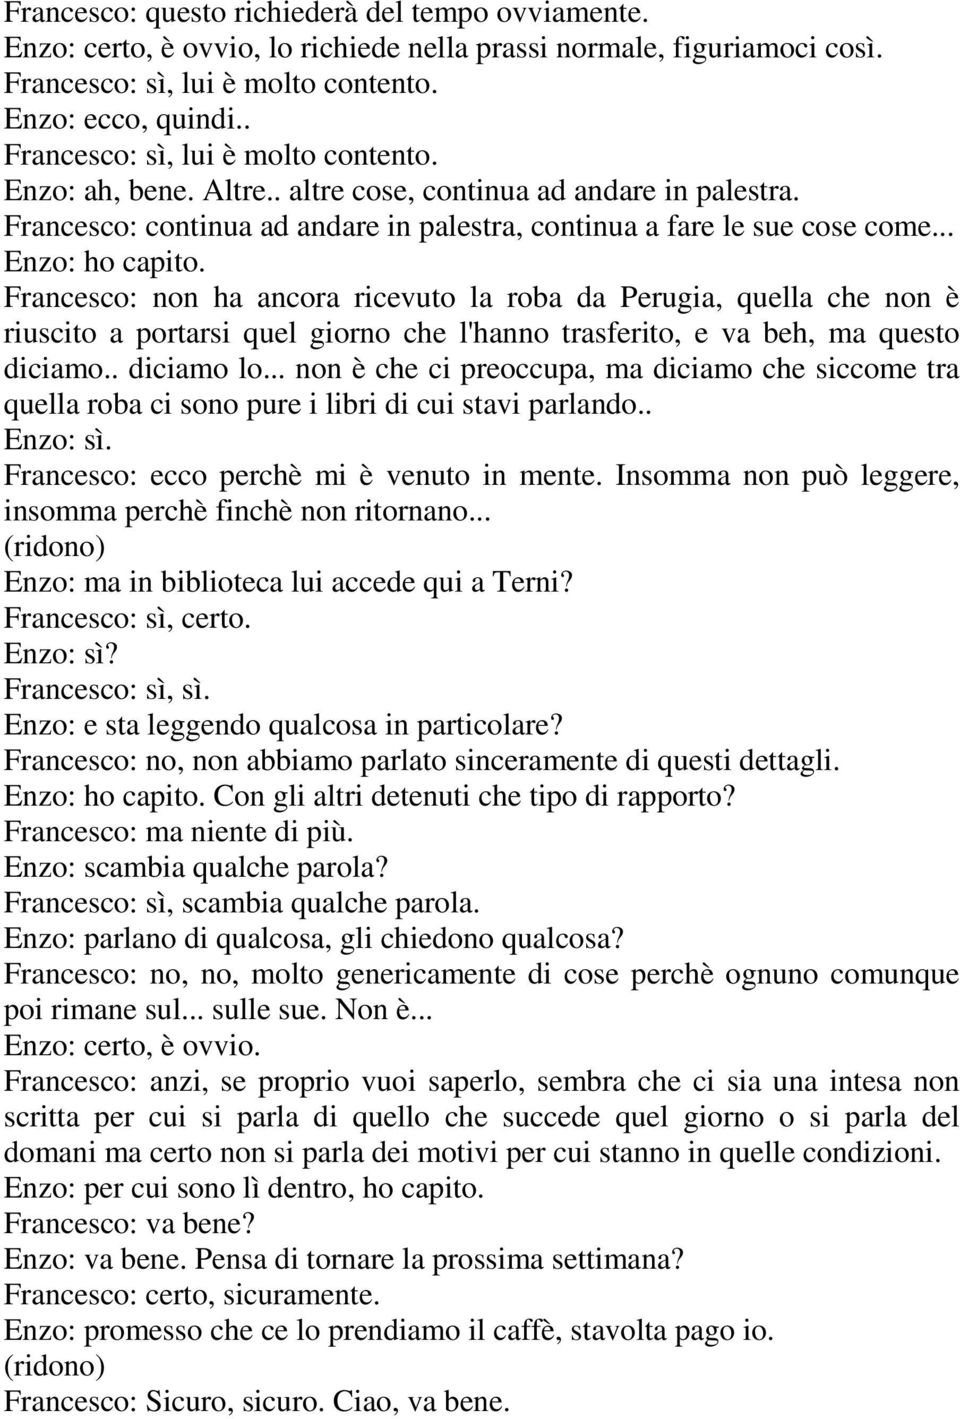 Francesco: non ha ancora ricevuto la roba da Perugia, quella che non è riuscito a portarsi quel giorno che l'hanno trasferito, e va beh, ma questo diciamo.. diciamo lo.